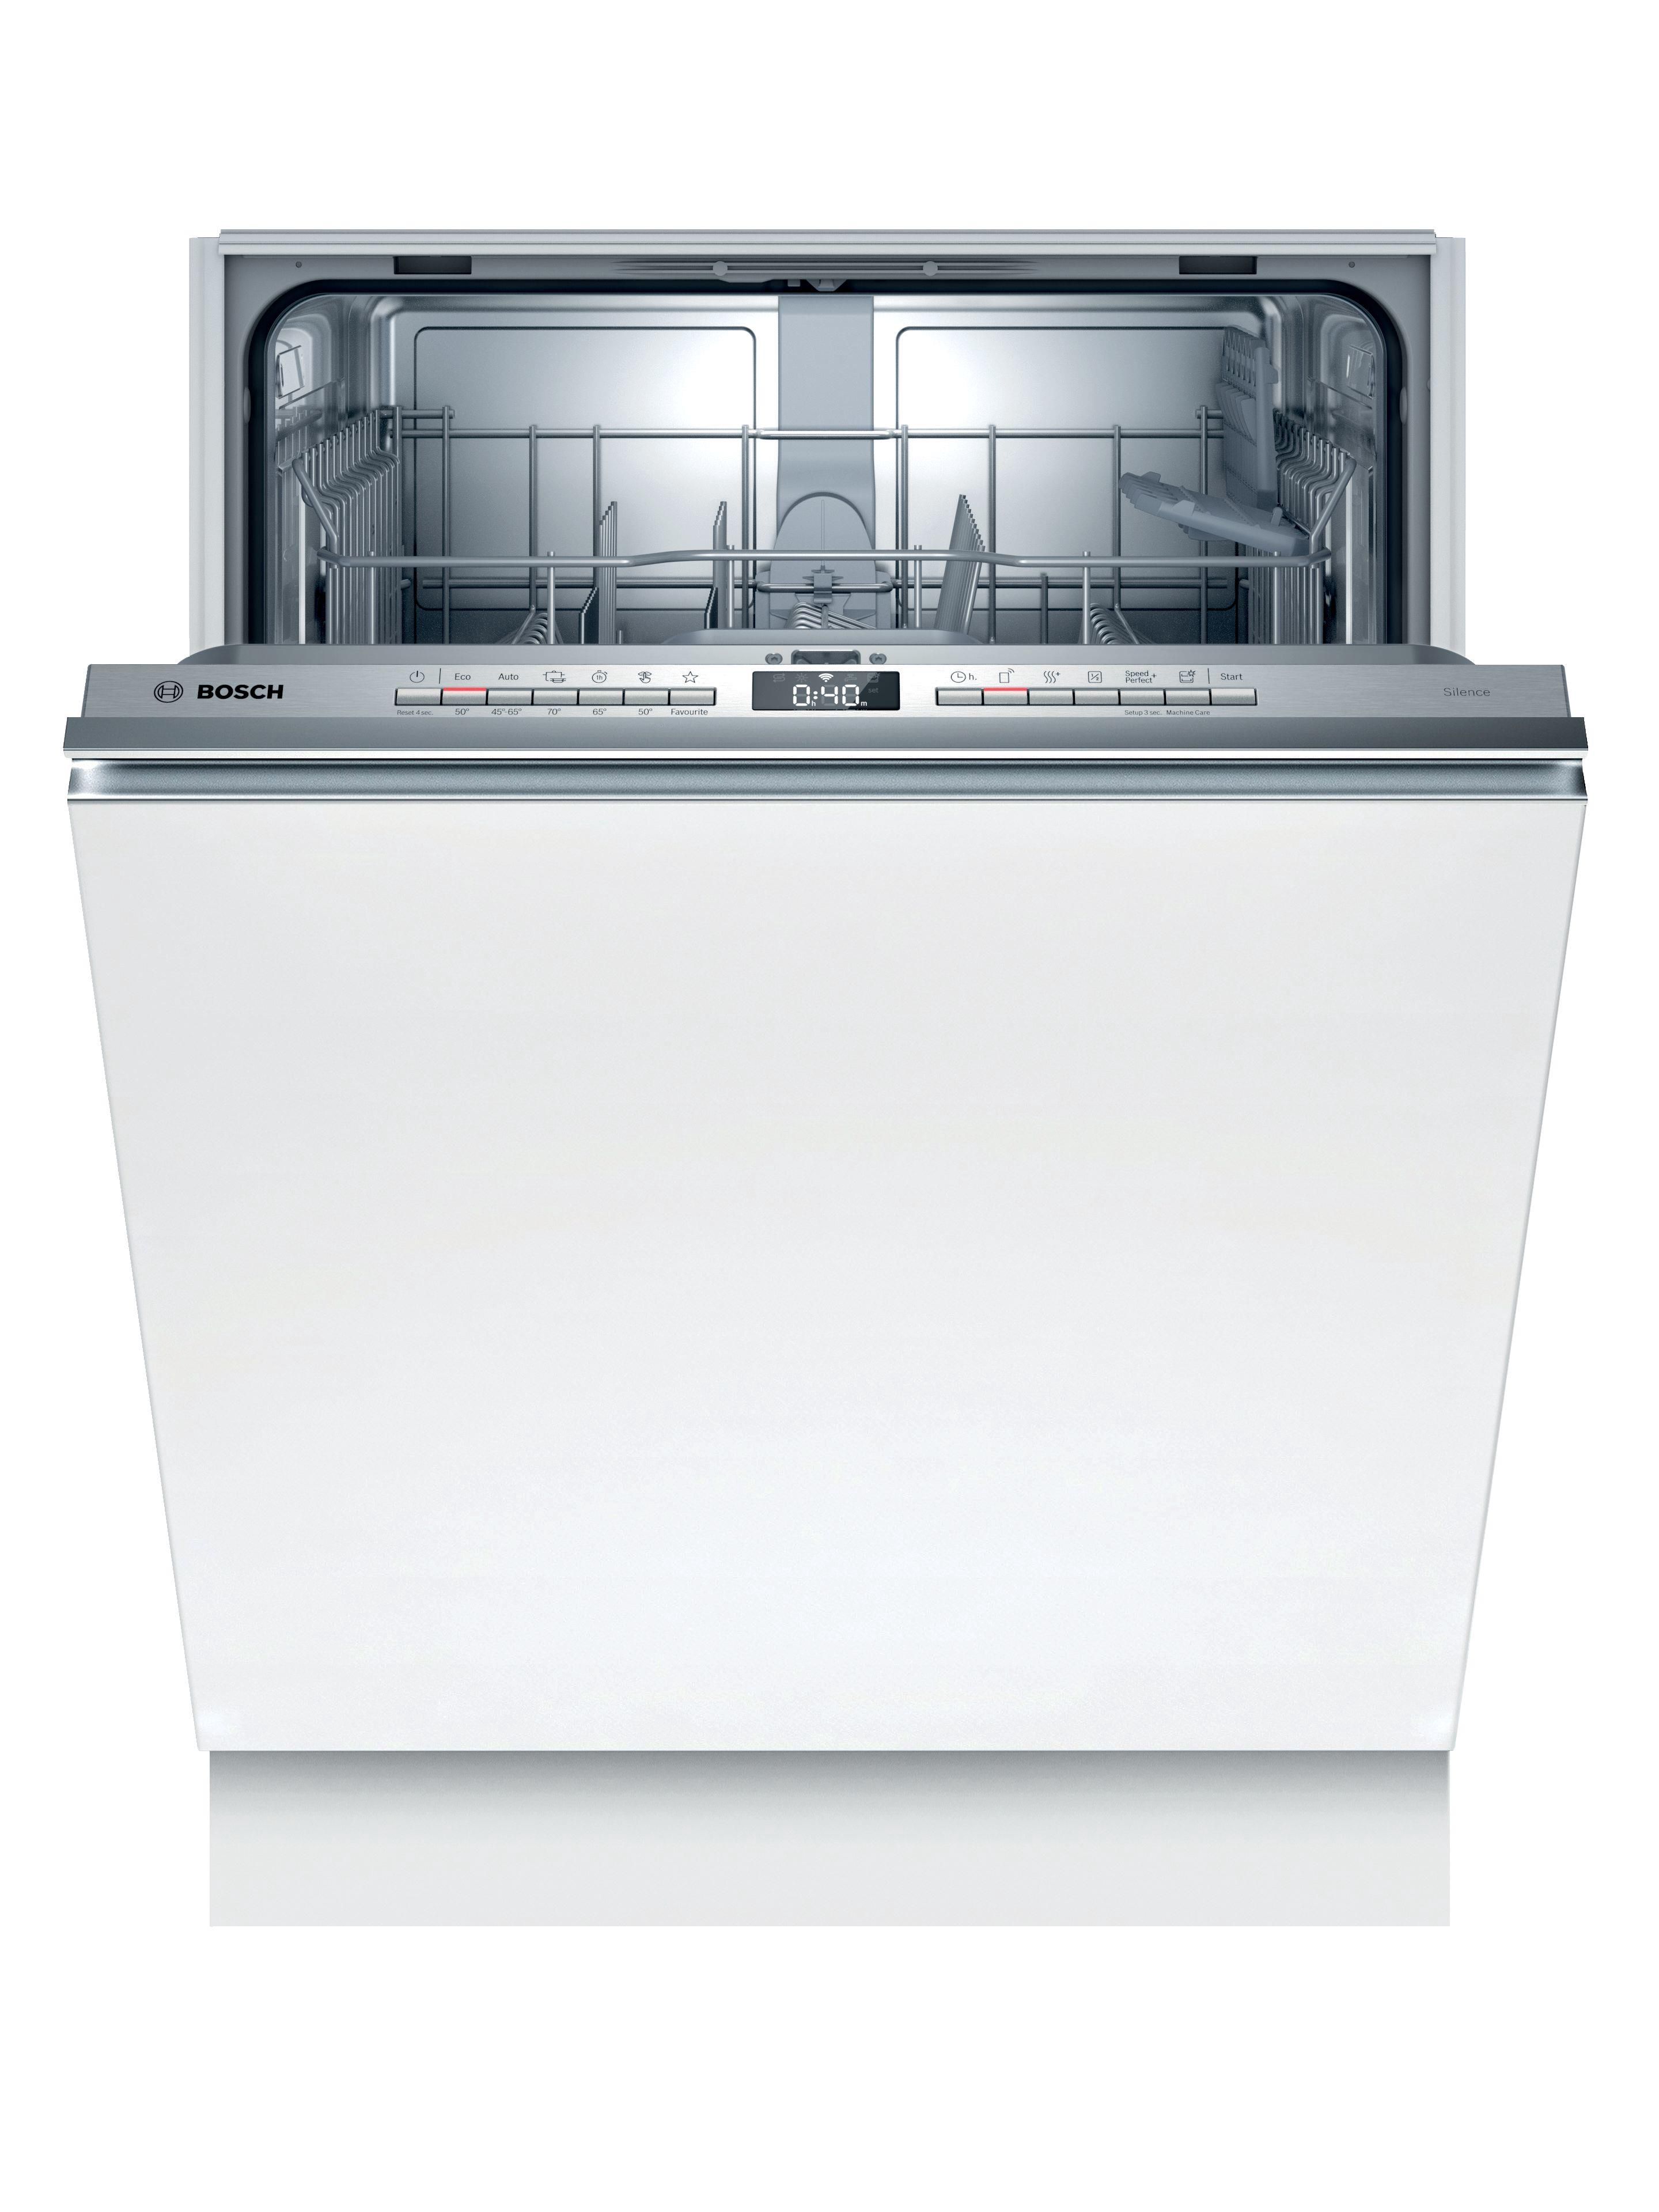 Купить посудомоечную машину 60 см встраиваемая bosch. Bosch spv6hmx1mr. Встраиваемая посудомоечная машина Bosch spv2ikx10e. Посудомоечная машина Bosch spv2imy2er. Встраиваемая посудомоечная машина 60 см Bosch serie|4 sgv4hmx3fr.